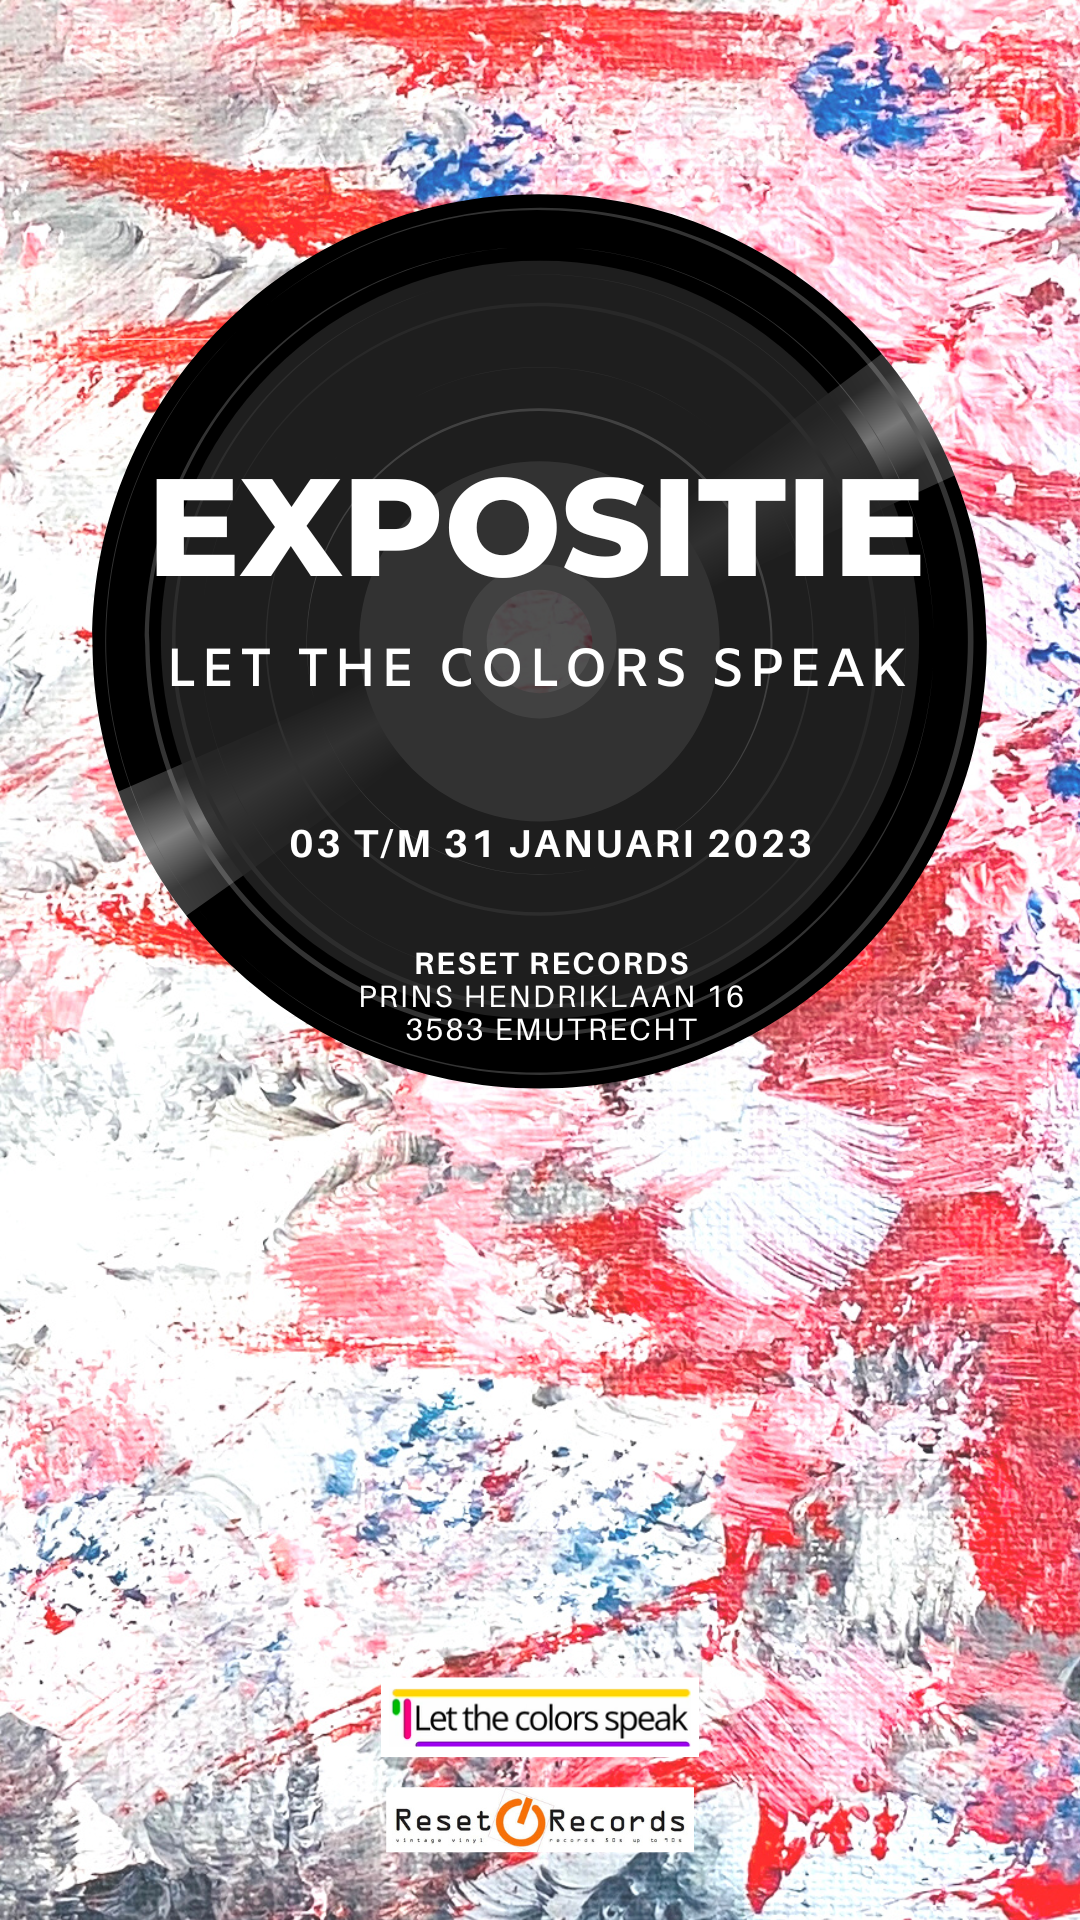 Let the colors speak expositie Reset Records Claire Verkleij Rian Kraan